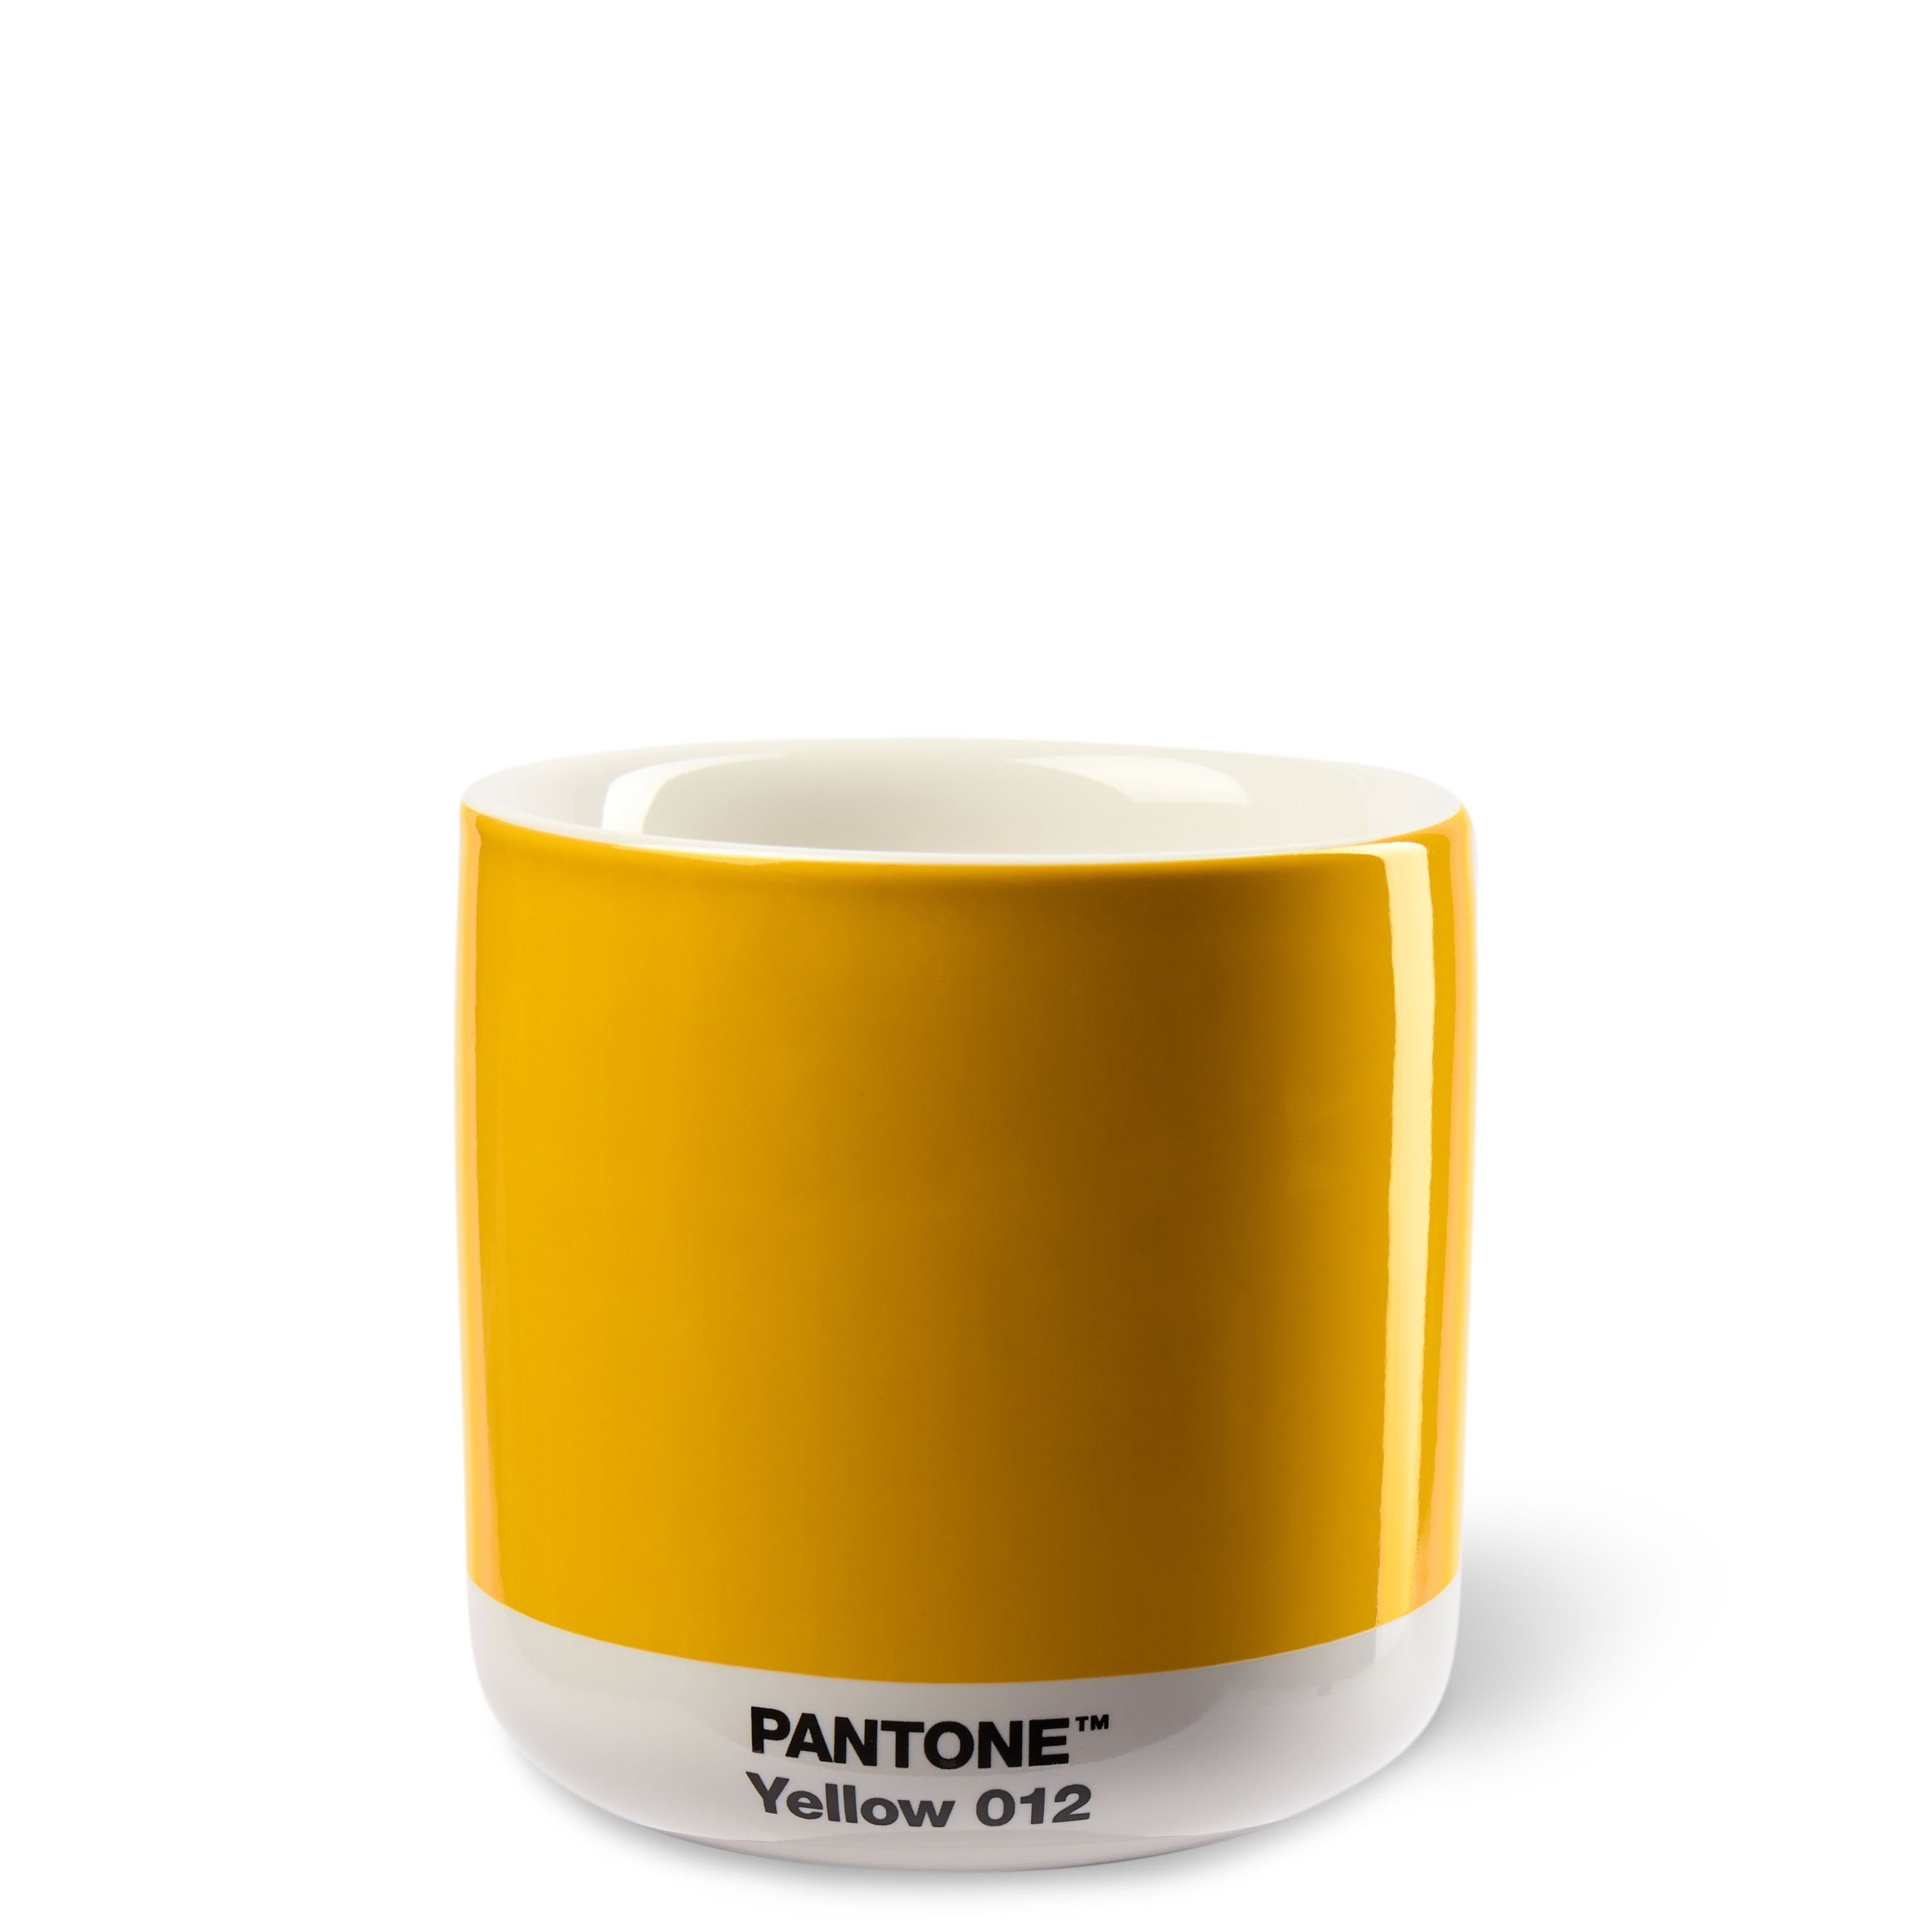 PANTONE Kaffeeservice, PANTONE Porzellan Thermobecher Latte Macchiato, 220 ml Yellow 012